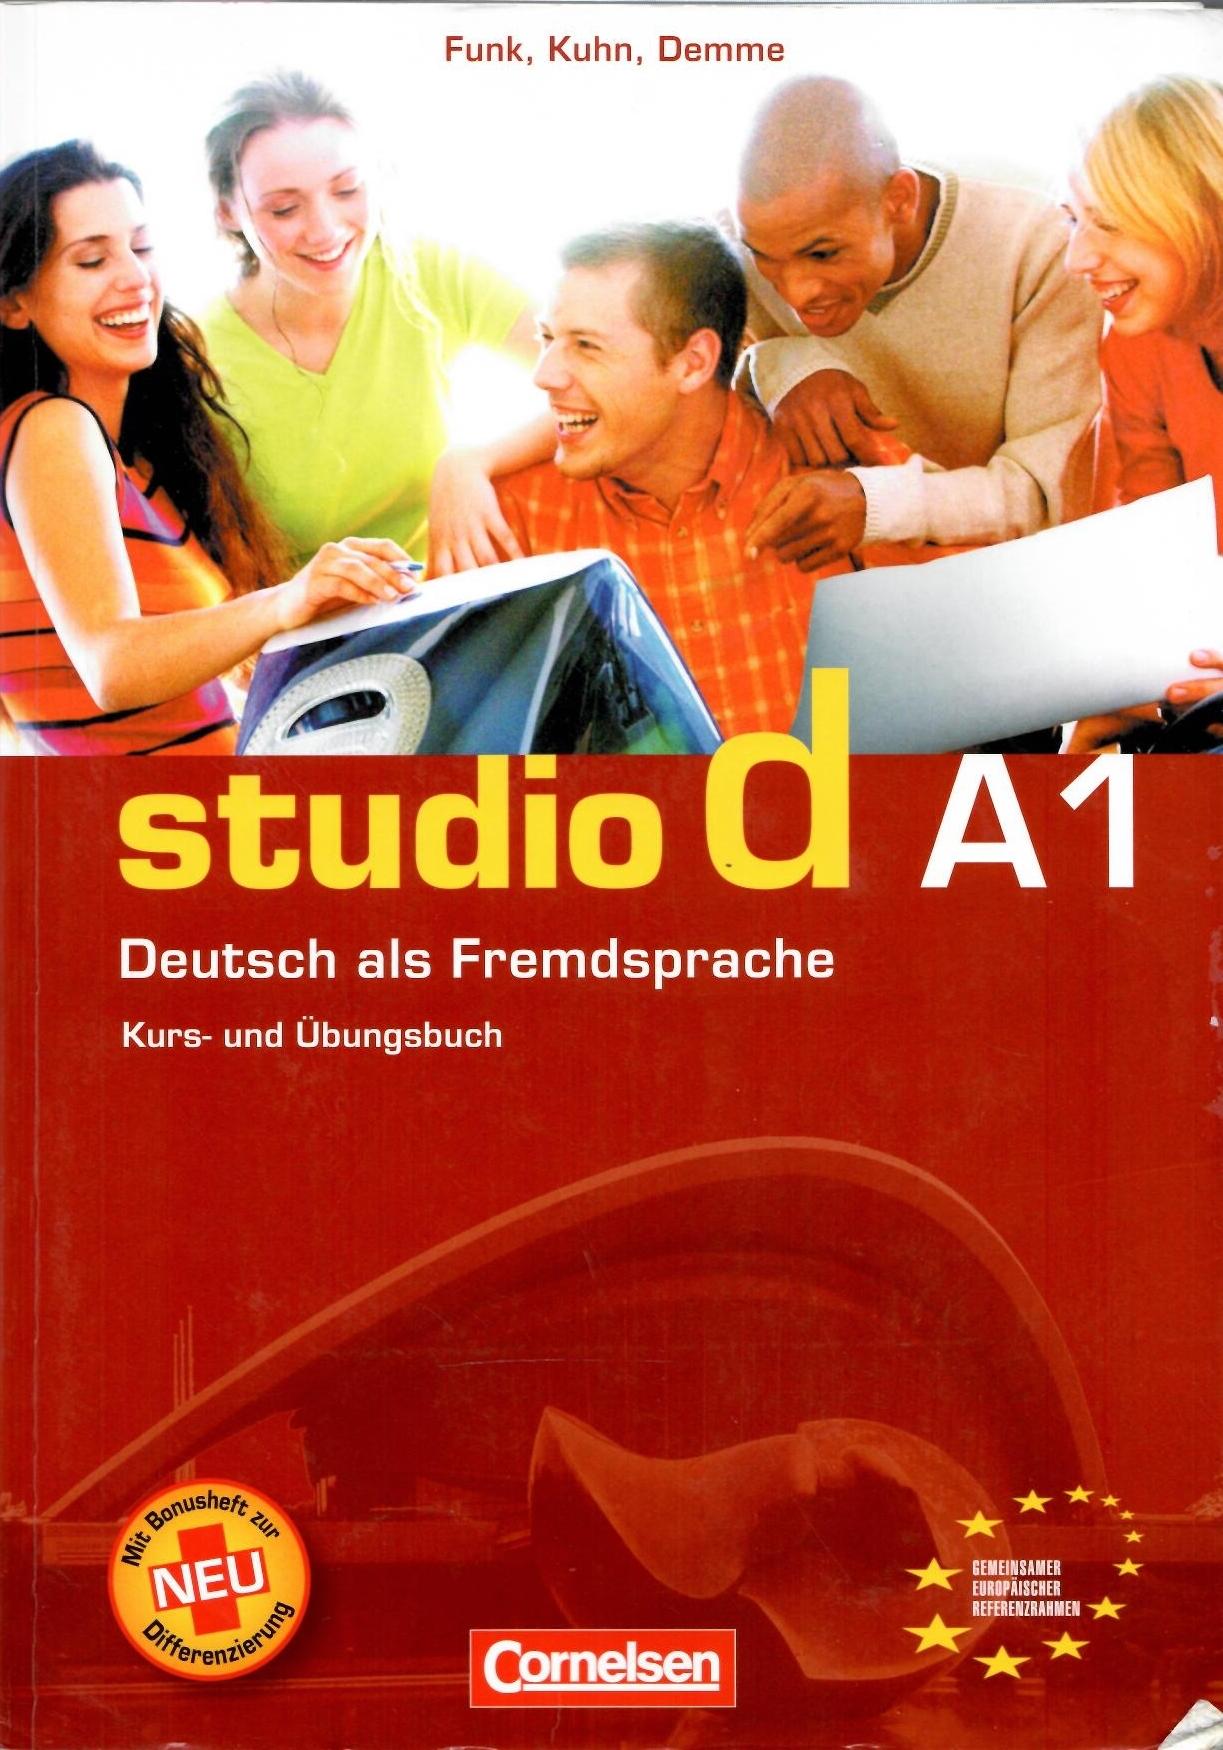 H. Funk, C. Kuhn, S. Demme Studio D A1: Deutsch als Fremdsprache: Kurs- und Ubungsbuch 